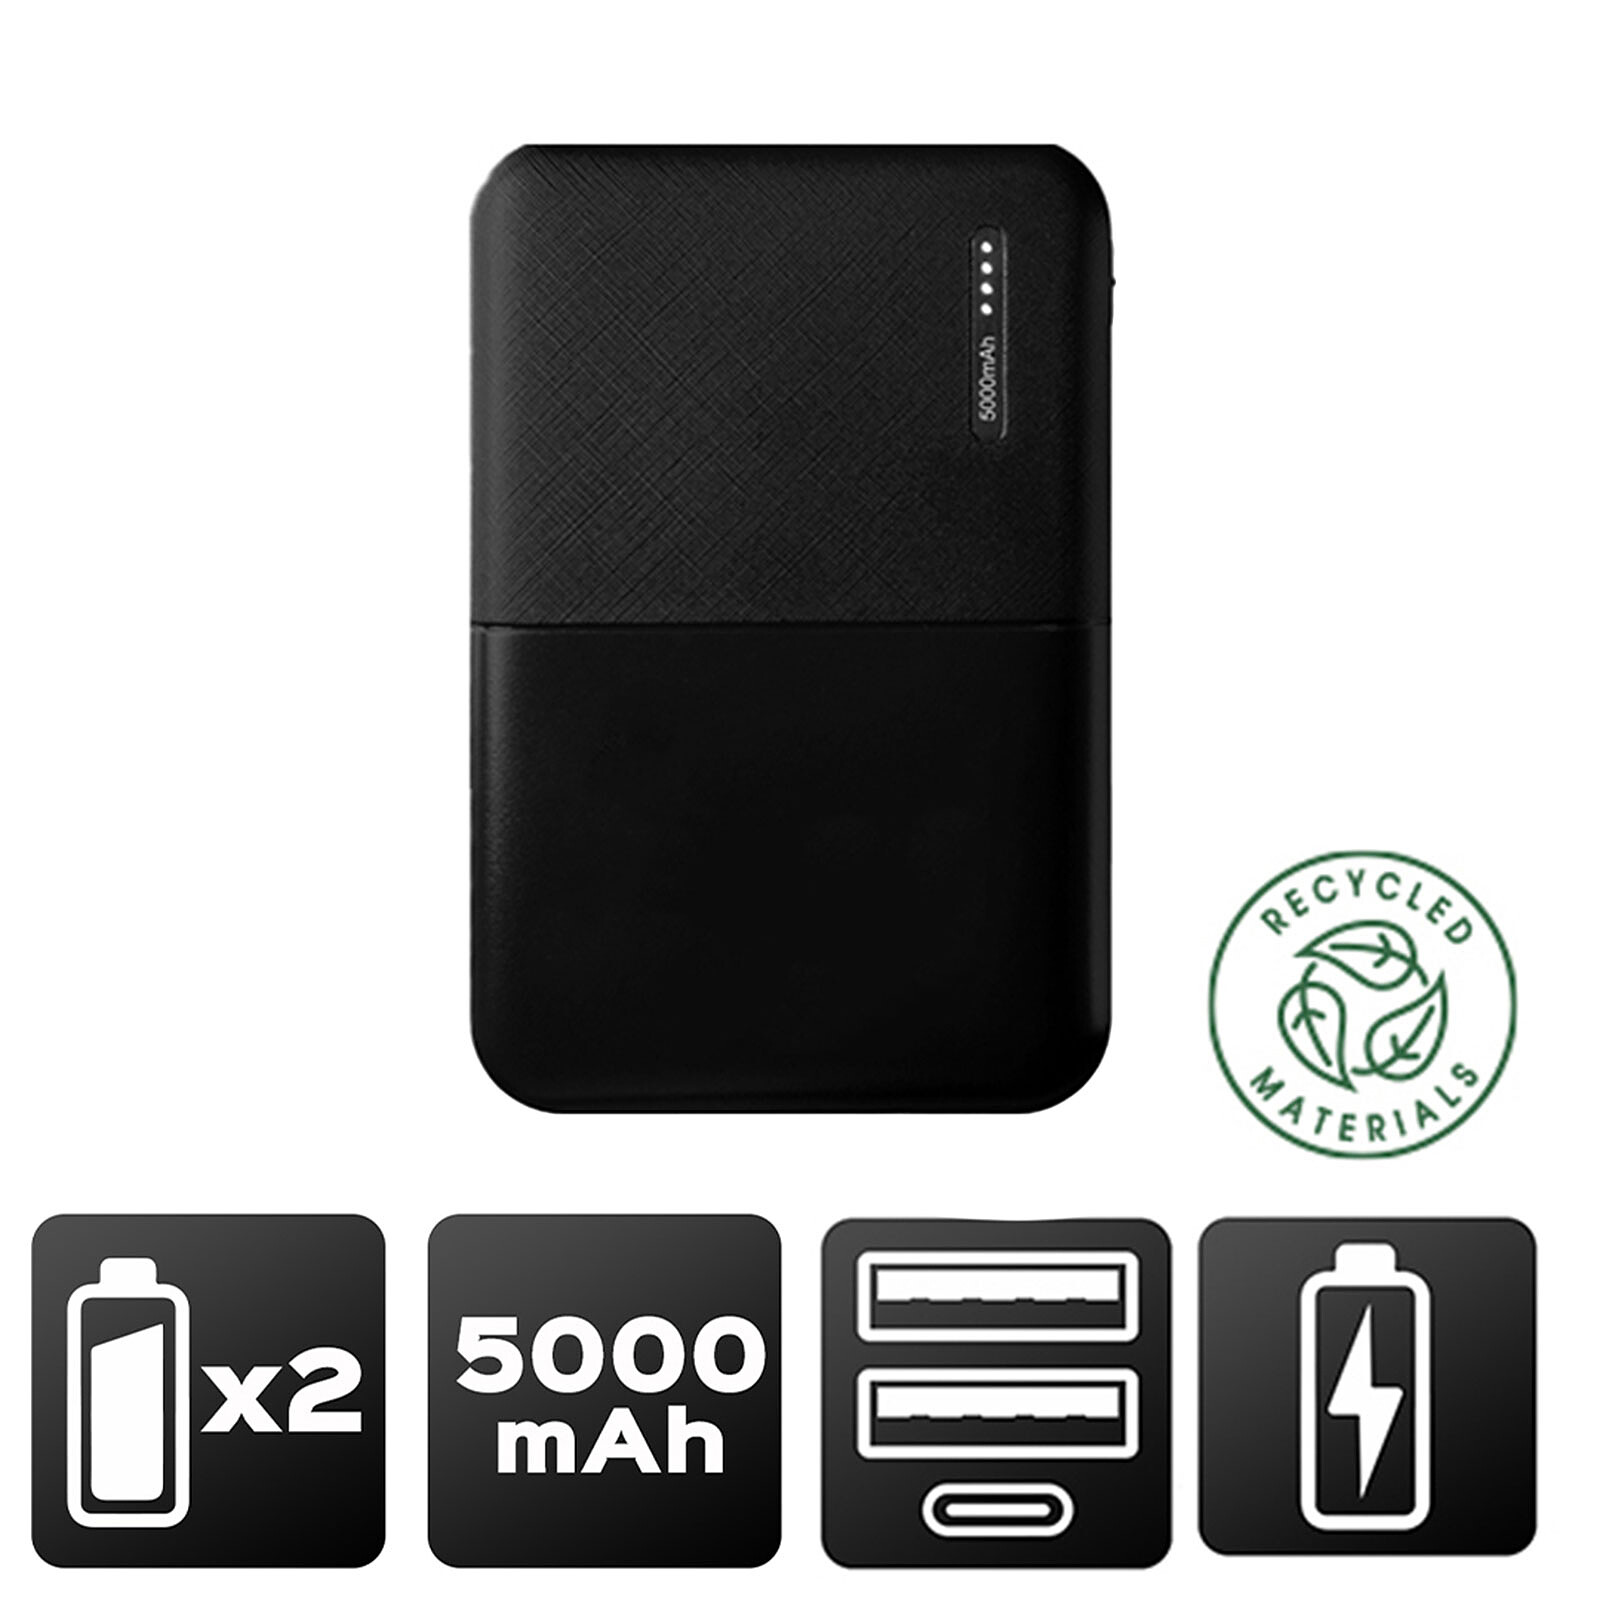 Akashi Batterie de Secours 5000 mAh Eco (Noir) - Batterie externe - LDLC